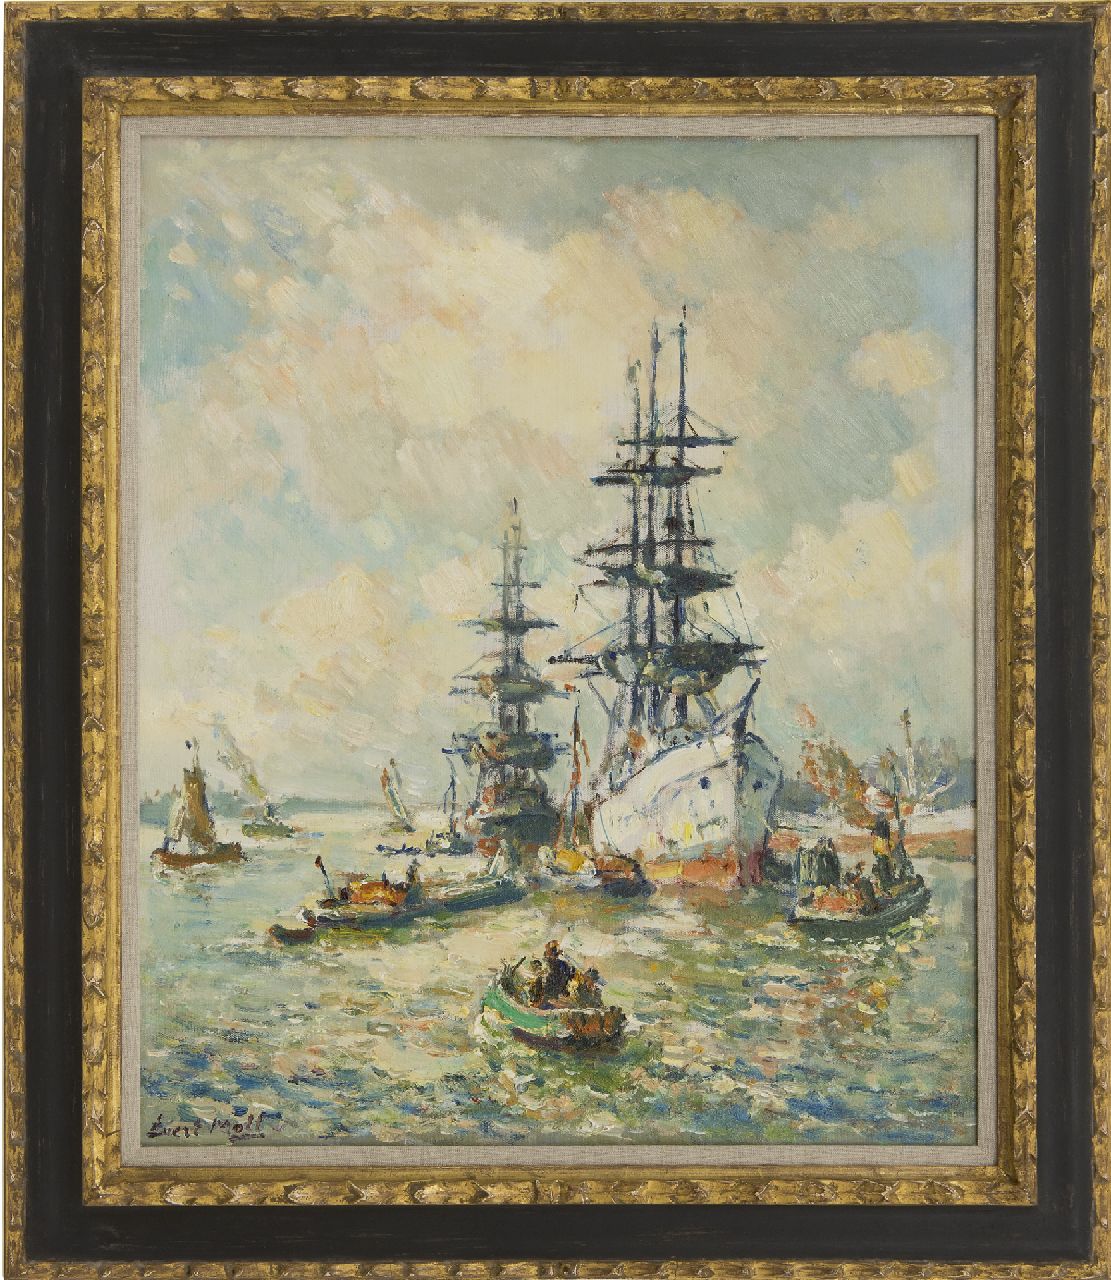 Moll E.  | Evert Moll | Schilderijen te koop aangeboden | Driemasters in de Rotterdamse haven, olieverf op doek 60,2 x 50,2 cm, gesigneerd linksonder